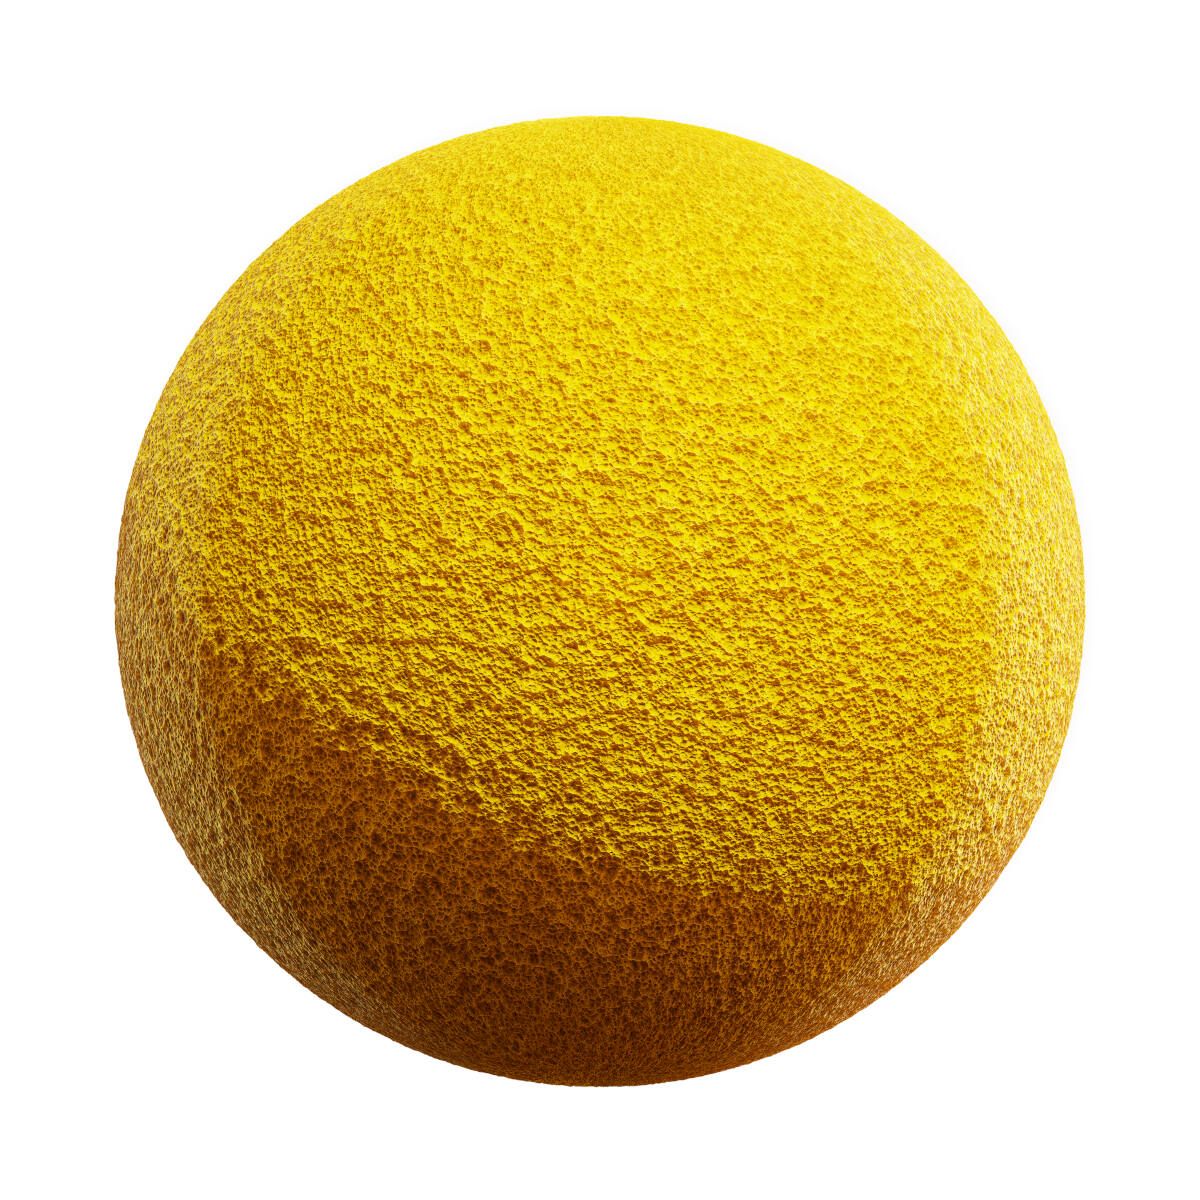 Yellow Spondge PBR Texture